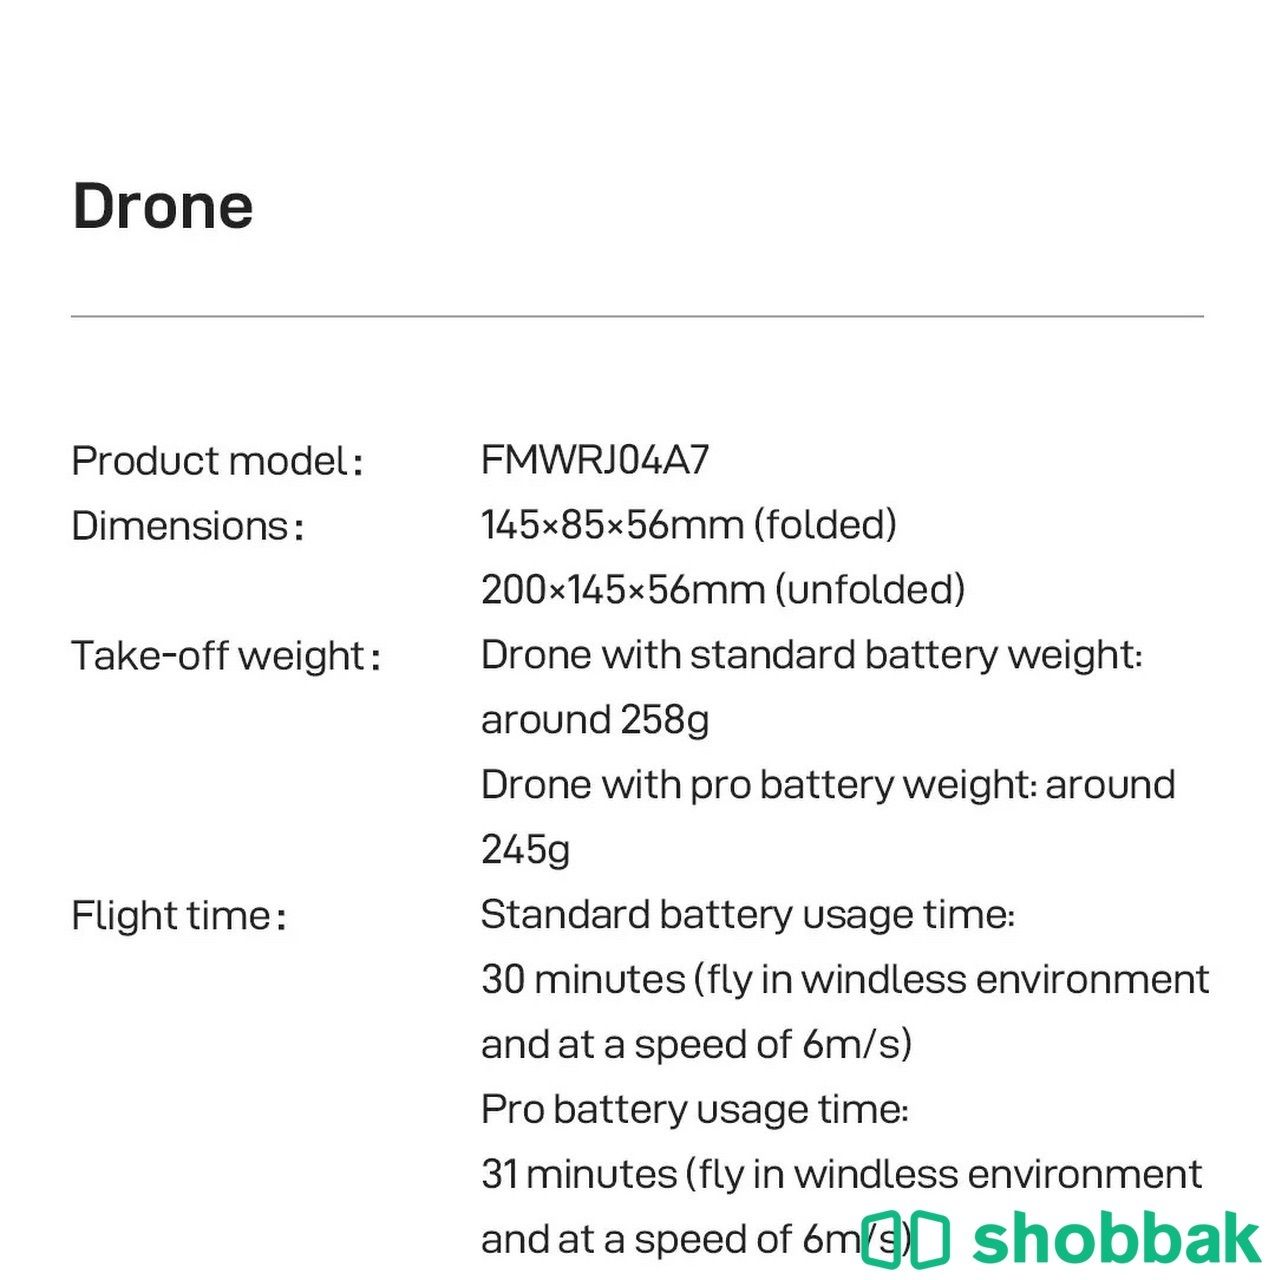 درون fimi جديدة تصوير 4K مدى يصل الى 8 كيلومتر drone Shobbak Saudi Arabia